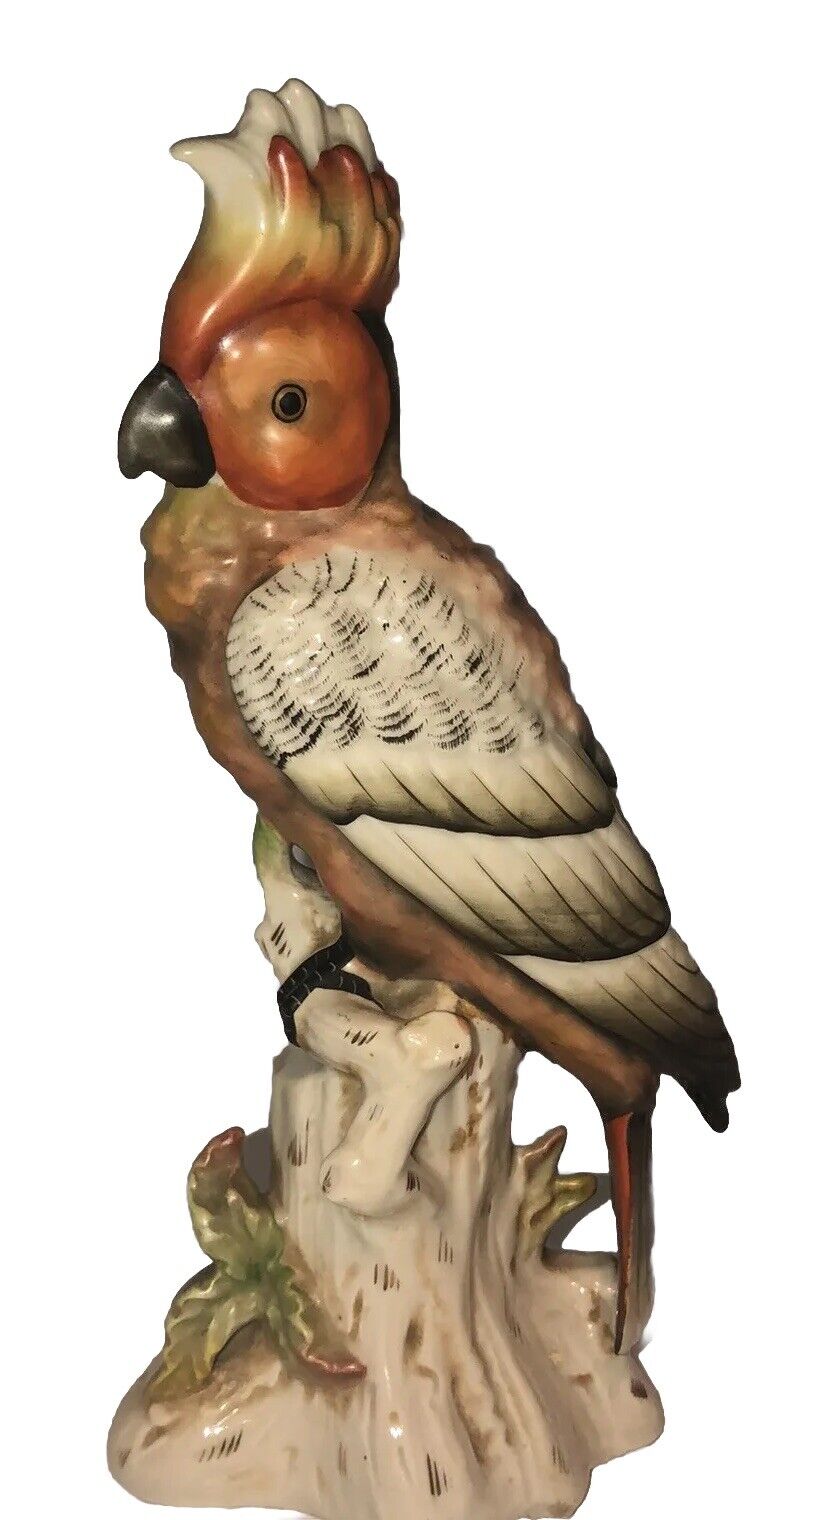 Antique High-Quality Porcelain Figurine Parrot Cockatoo Bird